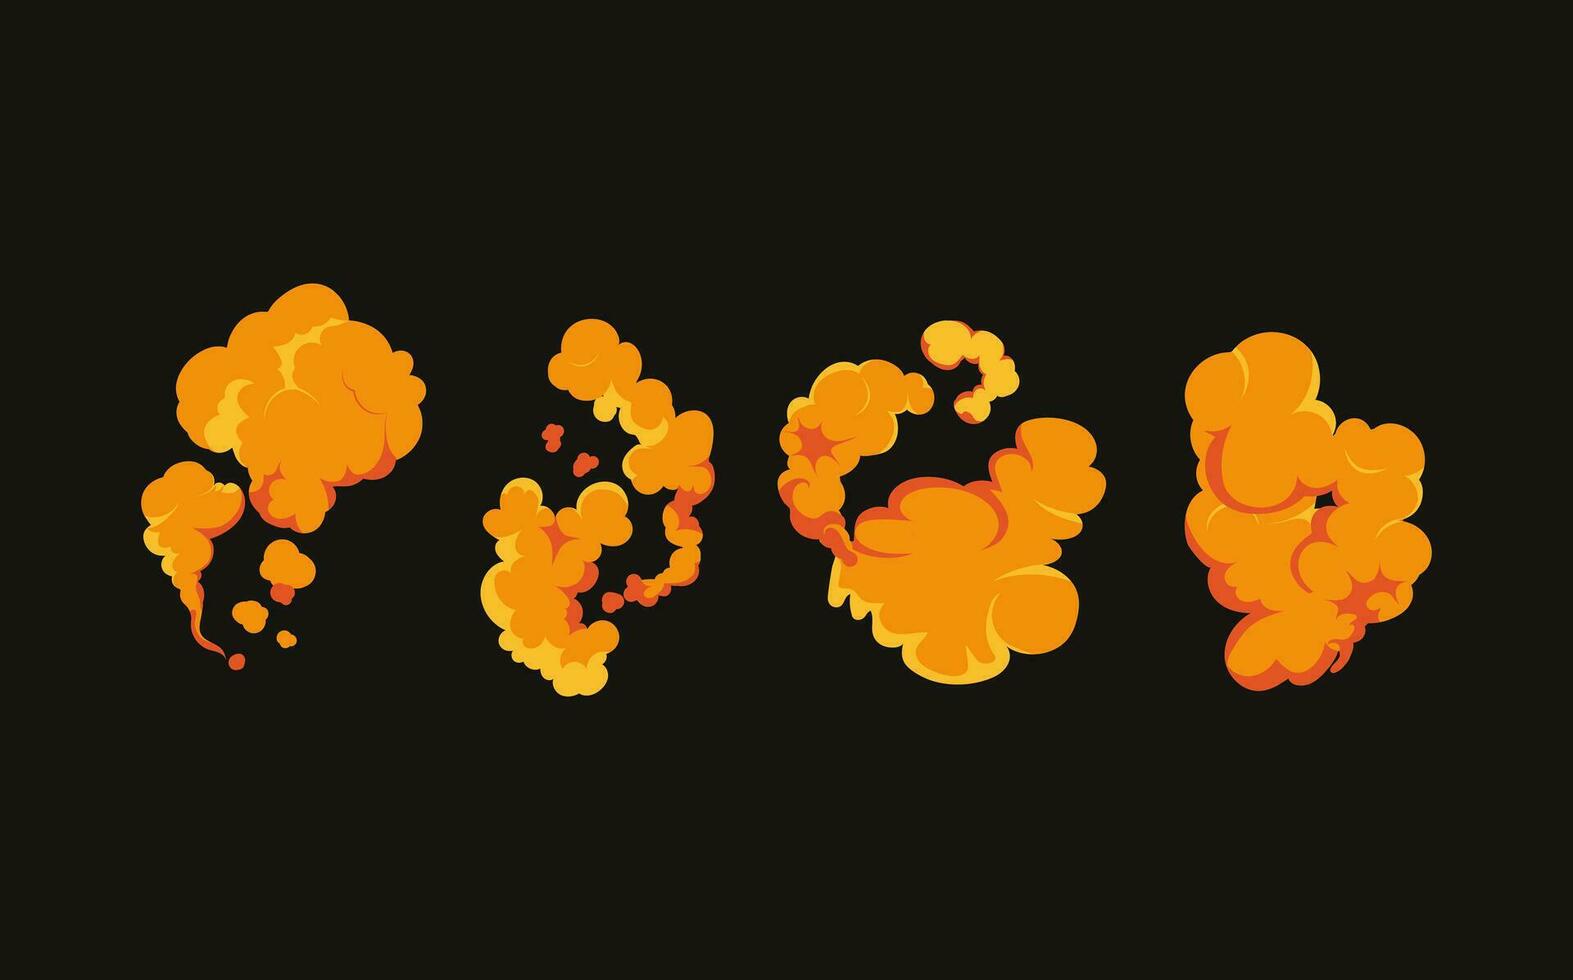 Rauch Explosion Animation von ein Explosion mit Comic fliegend Wolken. einstellen von isoliert Vektor Abbildungen zu erstellen ein Explosion Wirkung. das bewirken von Rauch Bewegung, funkeln und dynamisch Boom.